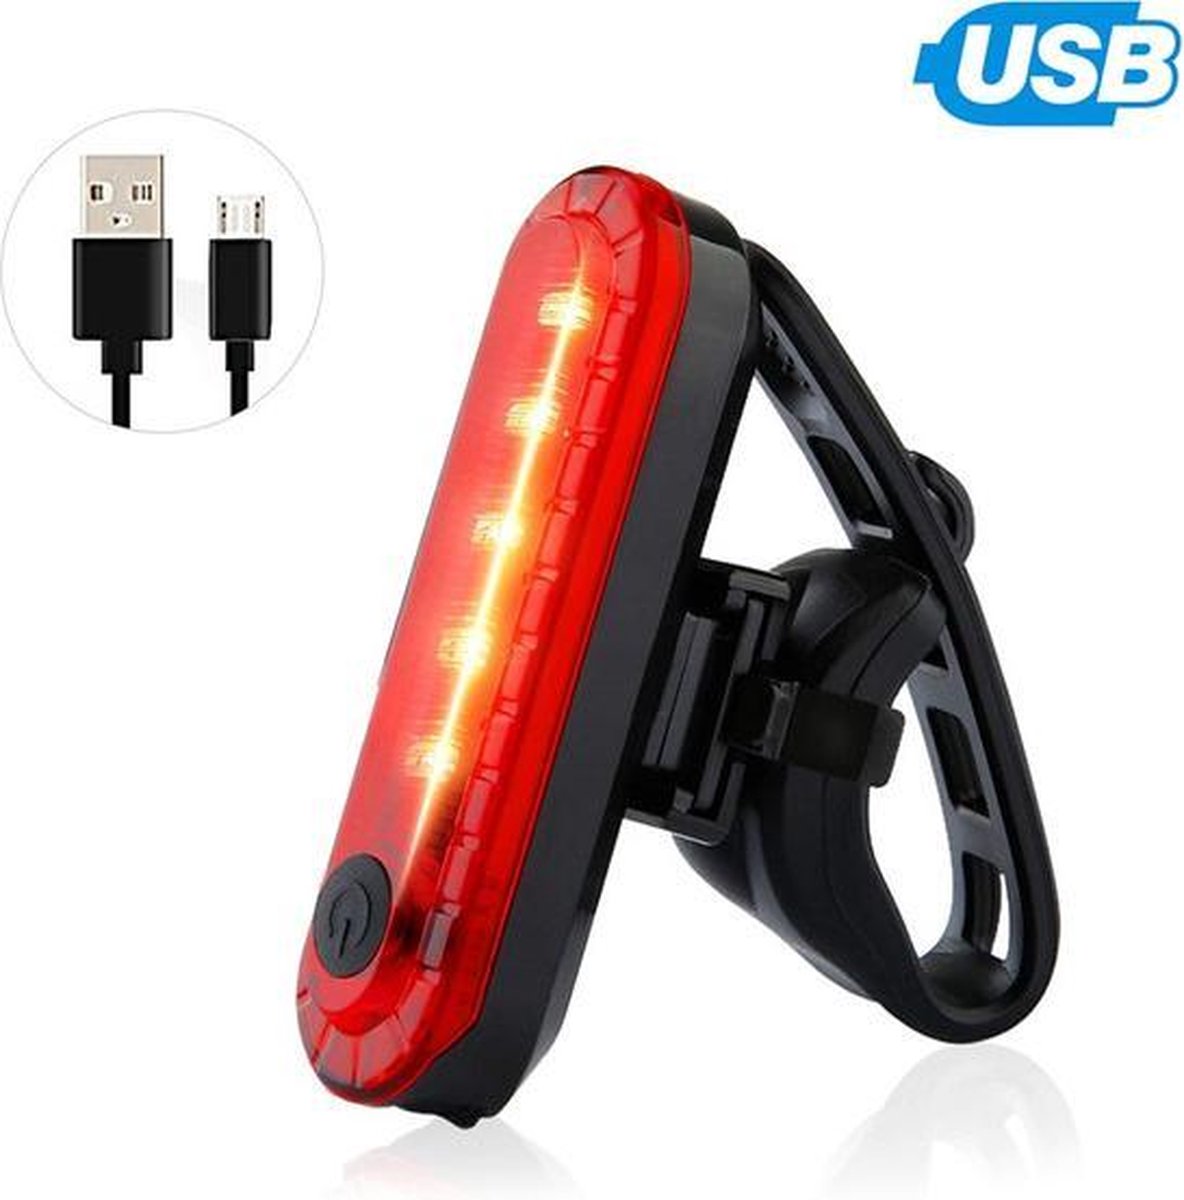 Waterdicht LED achterlicht voor de fiets, oplaadbaar met USB